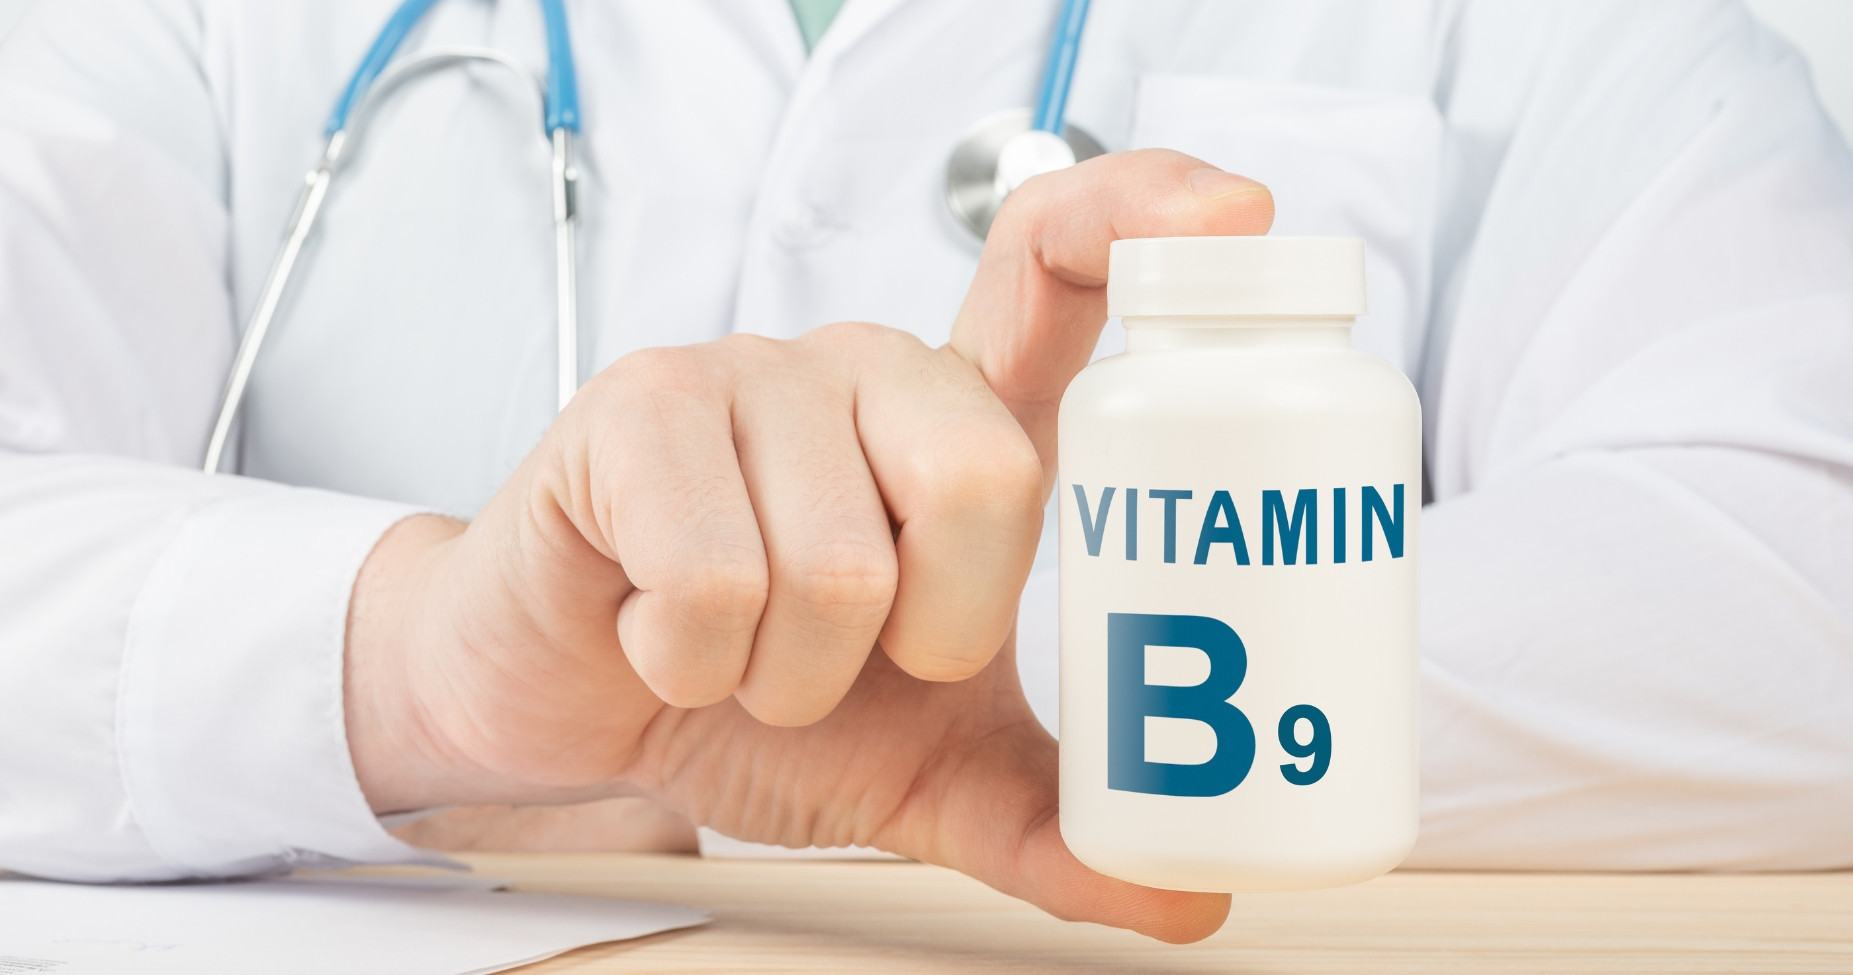 Bổ sung vitamin B9 có tác dụng gì cho cơ thể? Top 5 công dụng của vitamin B9